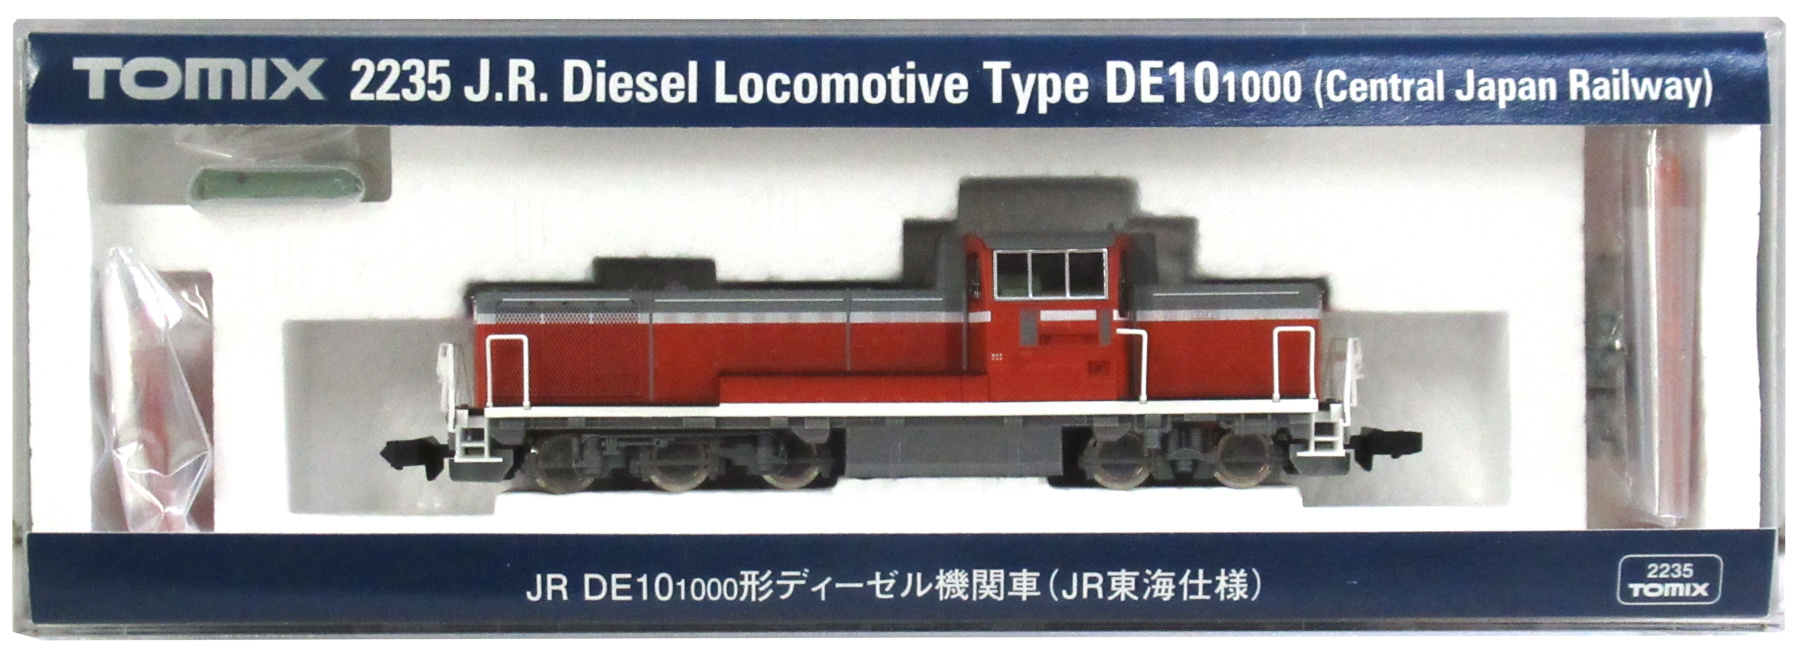 公式]鉄道模型(JR・国鉄 形式別(N)、ディーゼル機関車、DE10)カテゴリ 